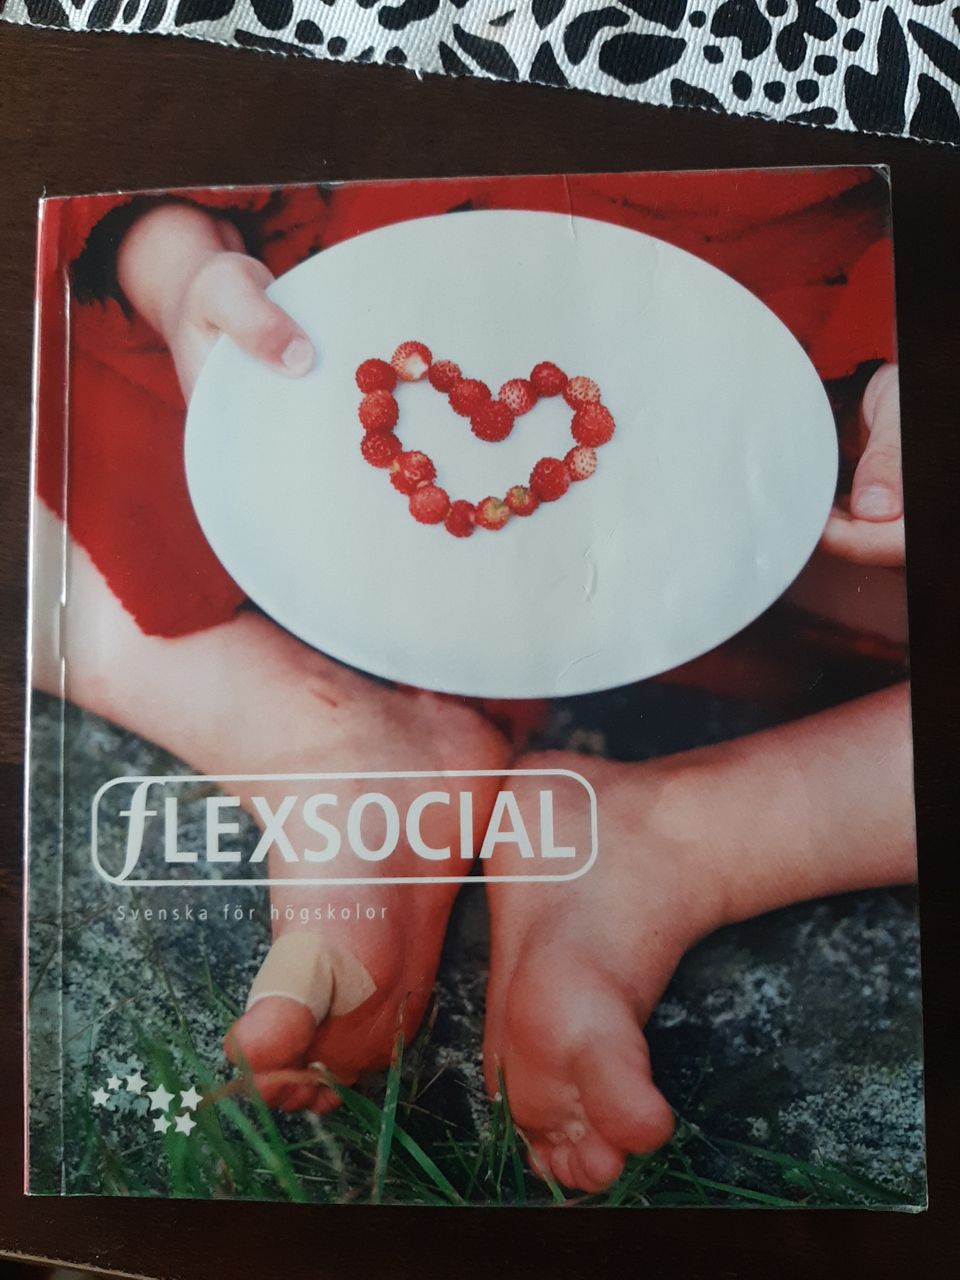 Flexsocial